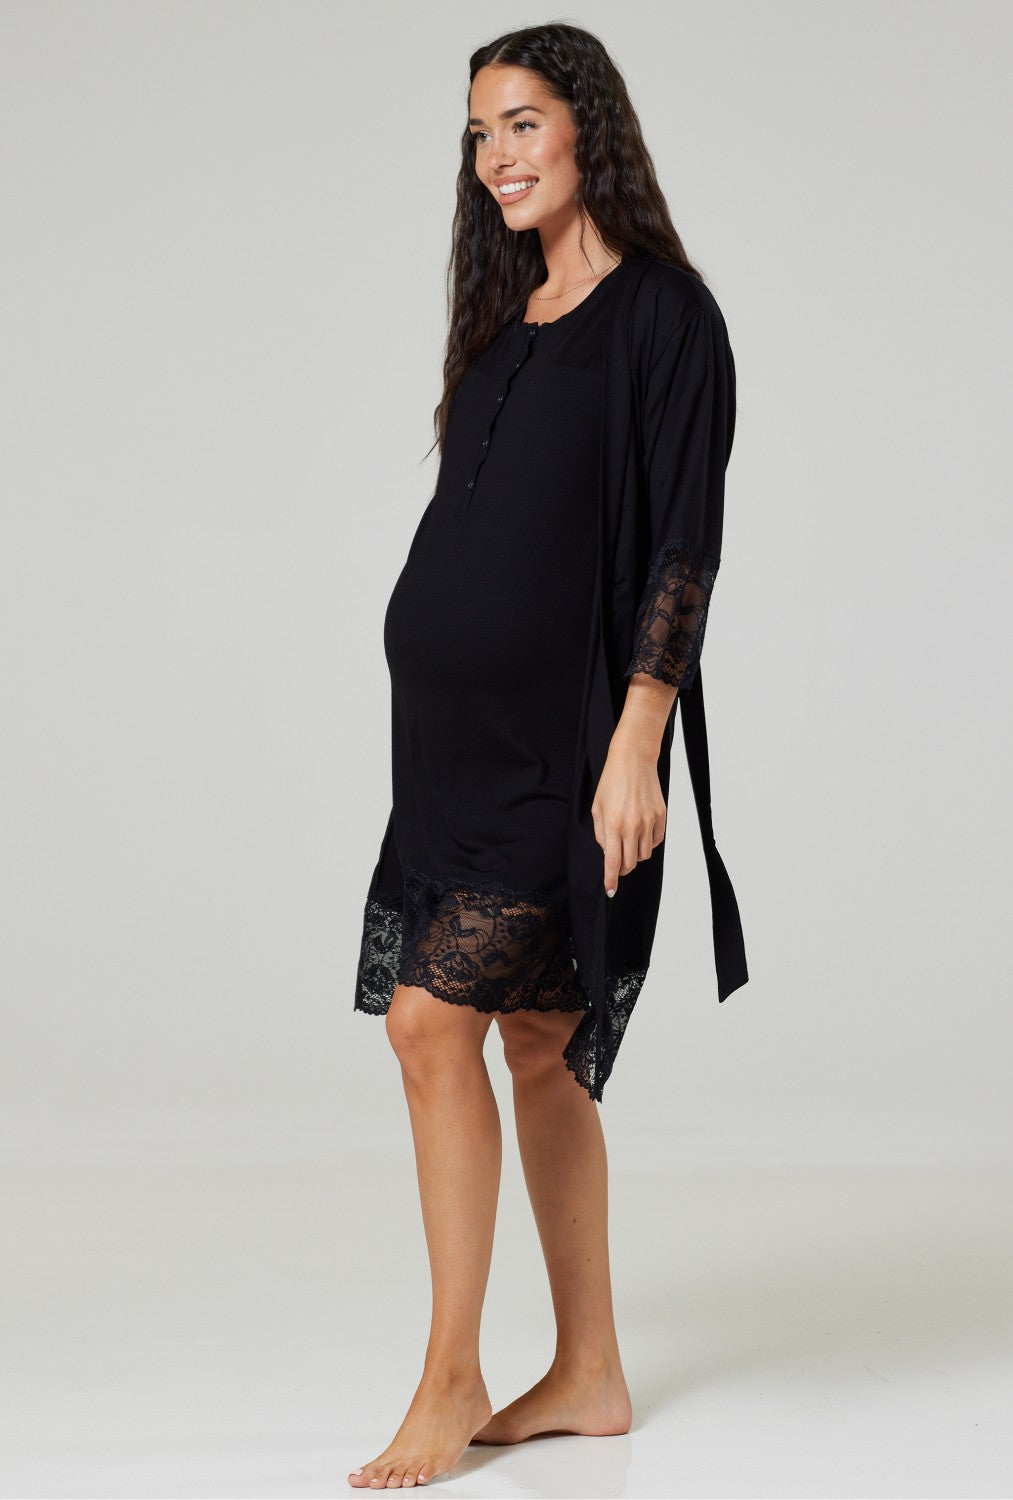 Maternity Nursing Nightwear Lace Set